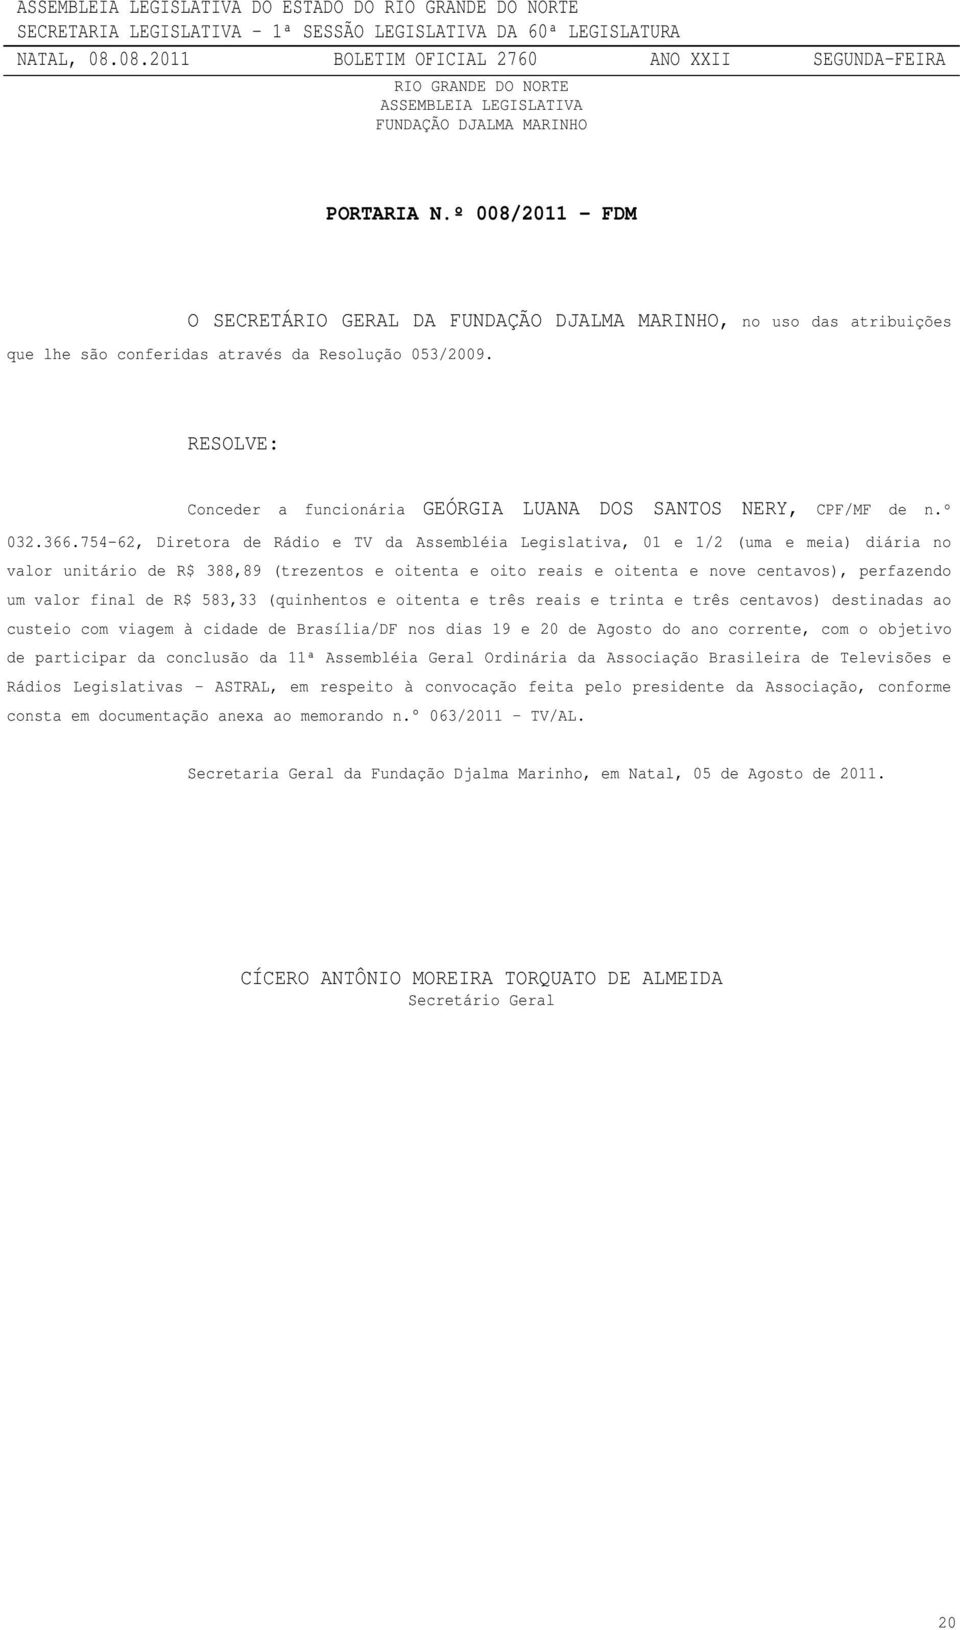 RESOLVE: Conceder a funcionária GEÓRGIA LUANA DOS SANTOS NERY, CPF/MF de n.º 032.366.